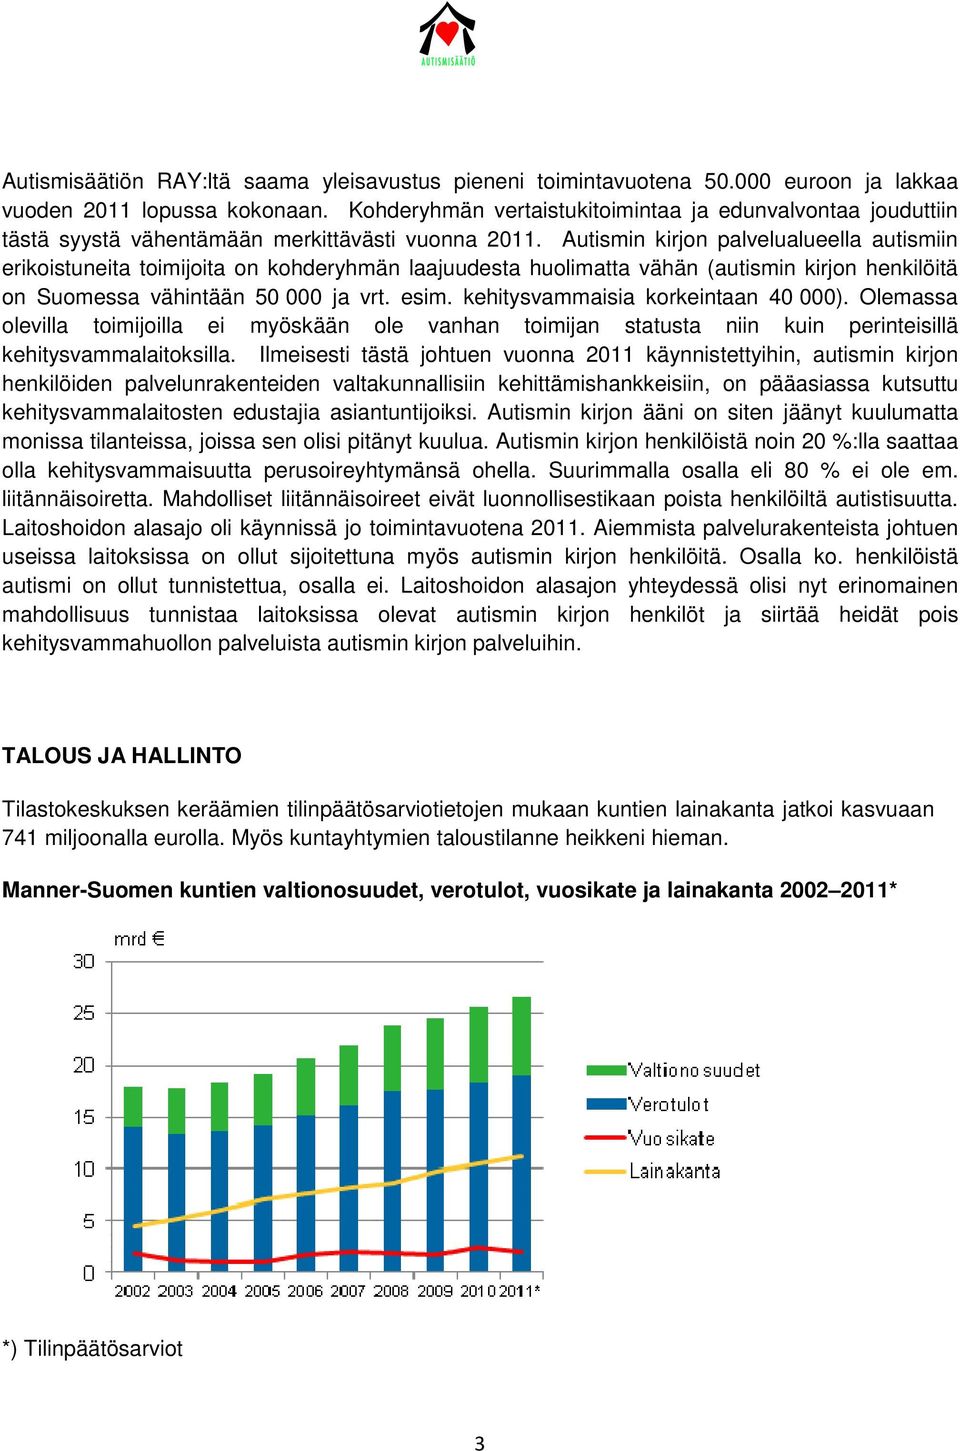 Autismin kirjon palvelualueella autismiin erikoistuneita toimijoita on kohderyhmän laajuudesta huolimatta vähän (autismin kirjon henkilöitä on Suomessa vähintään 50 000 ja vrt. esim.